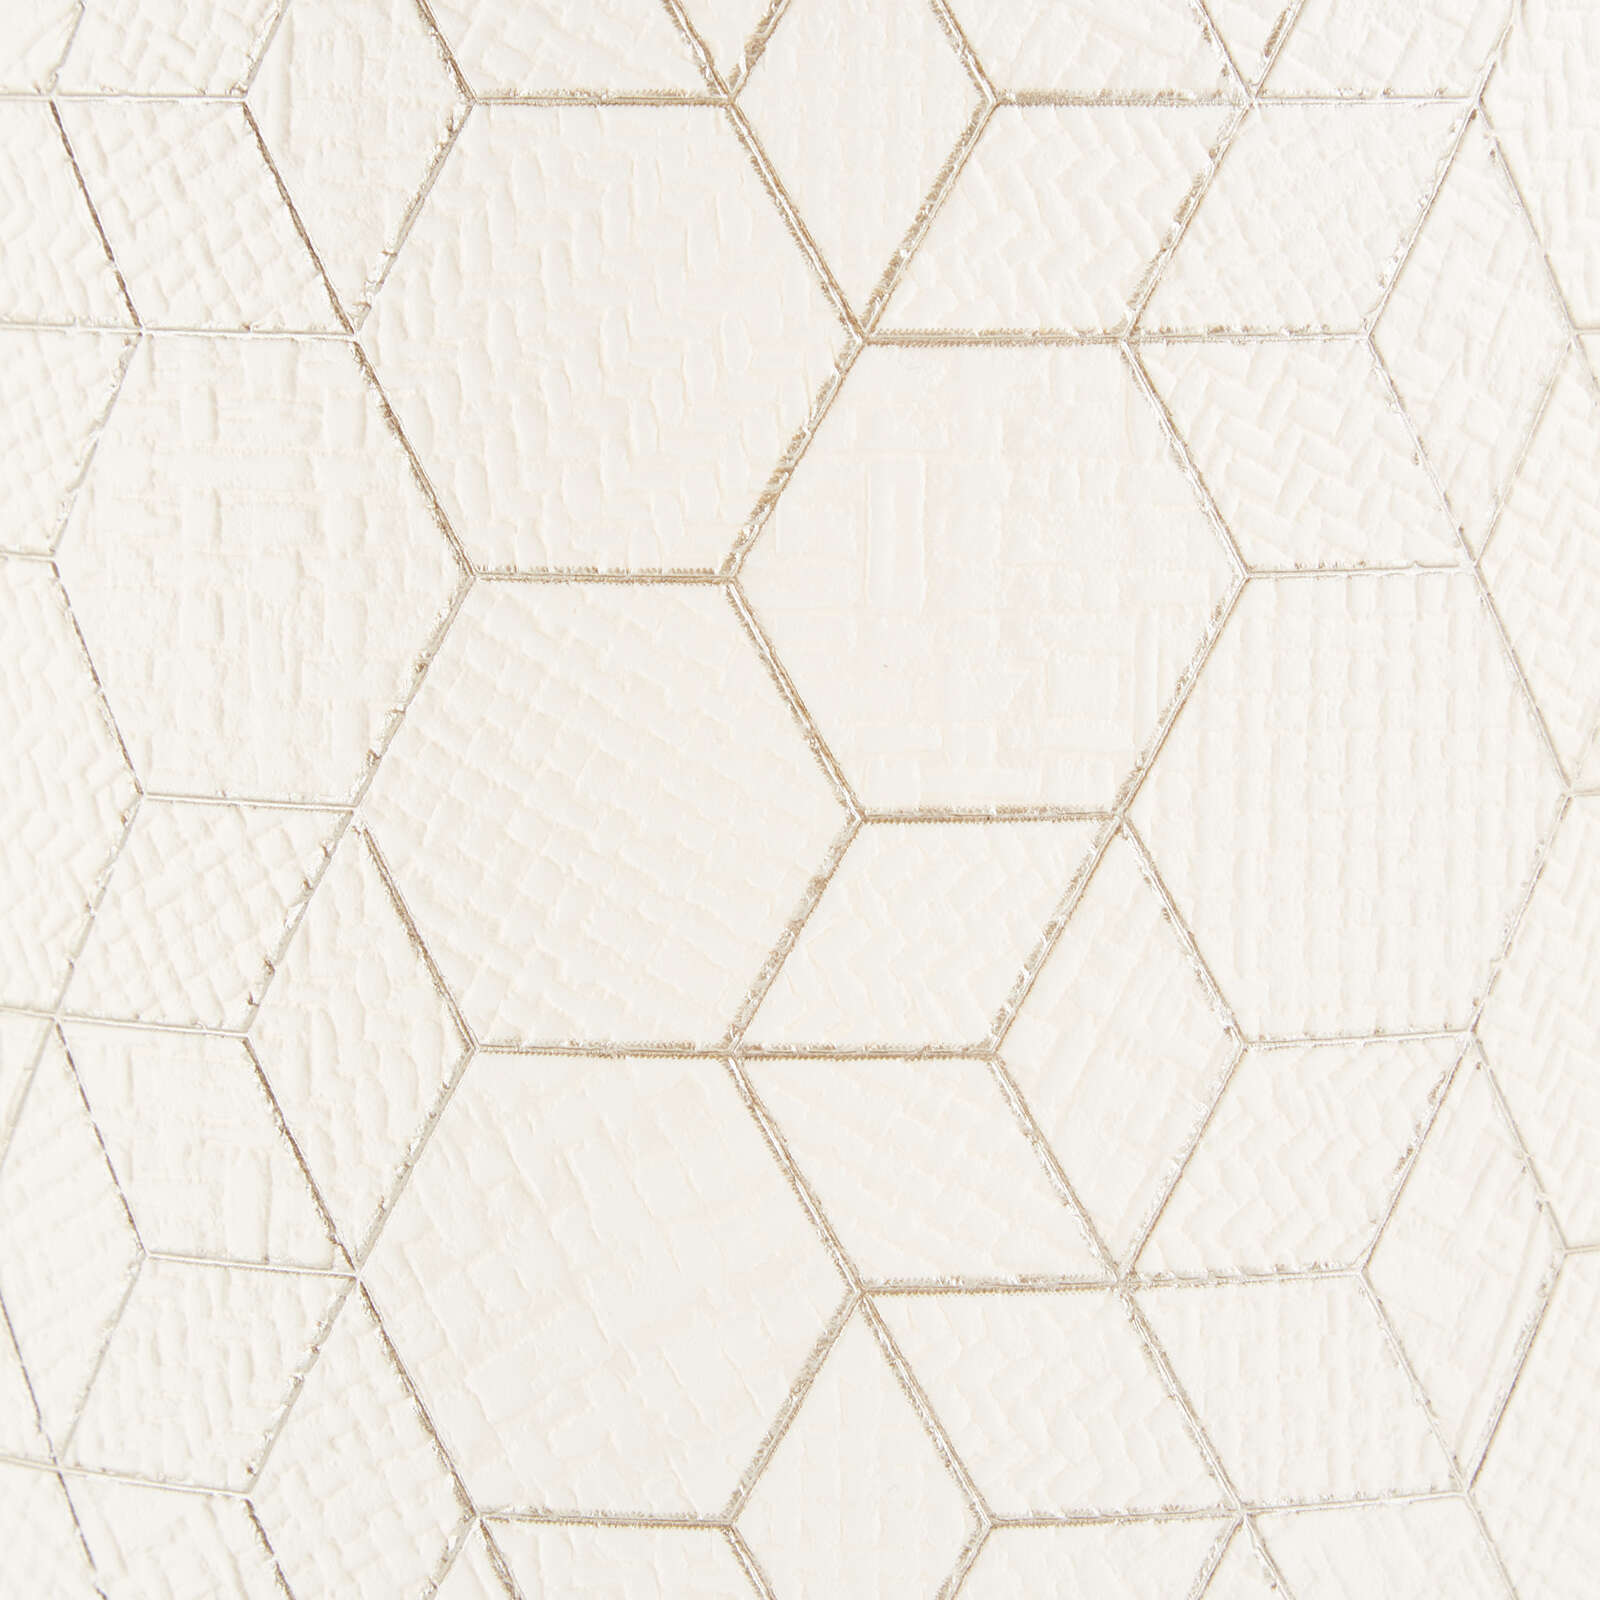             Spotbalken aus Textil - Hannes 5 – Braun
        